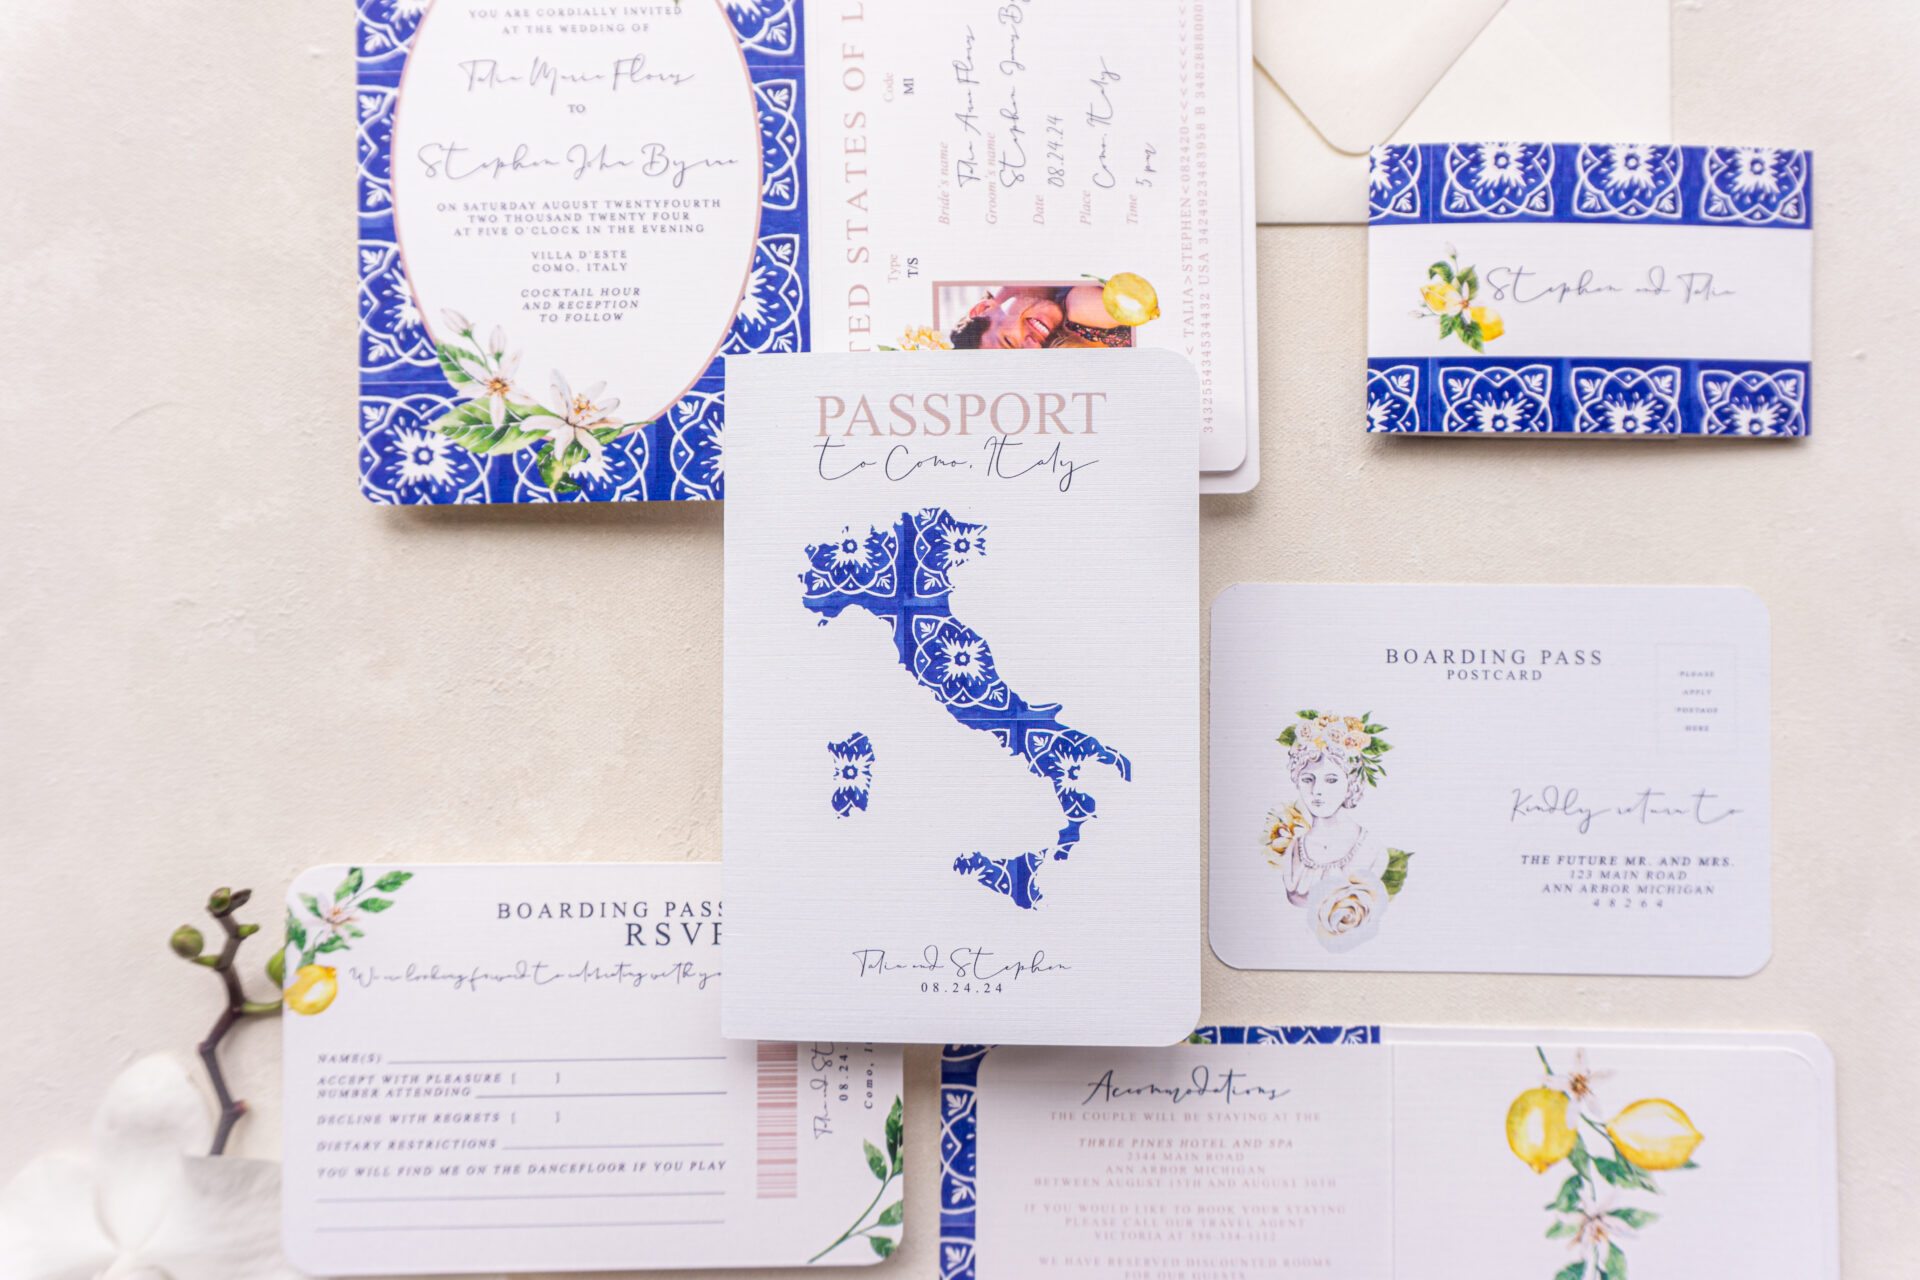 Capri Printers – Print Your Story